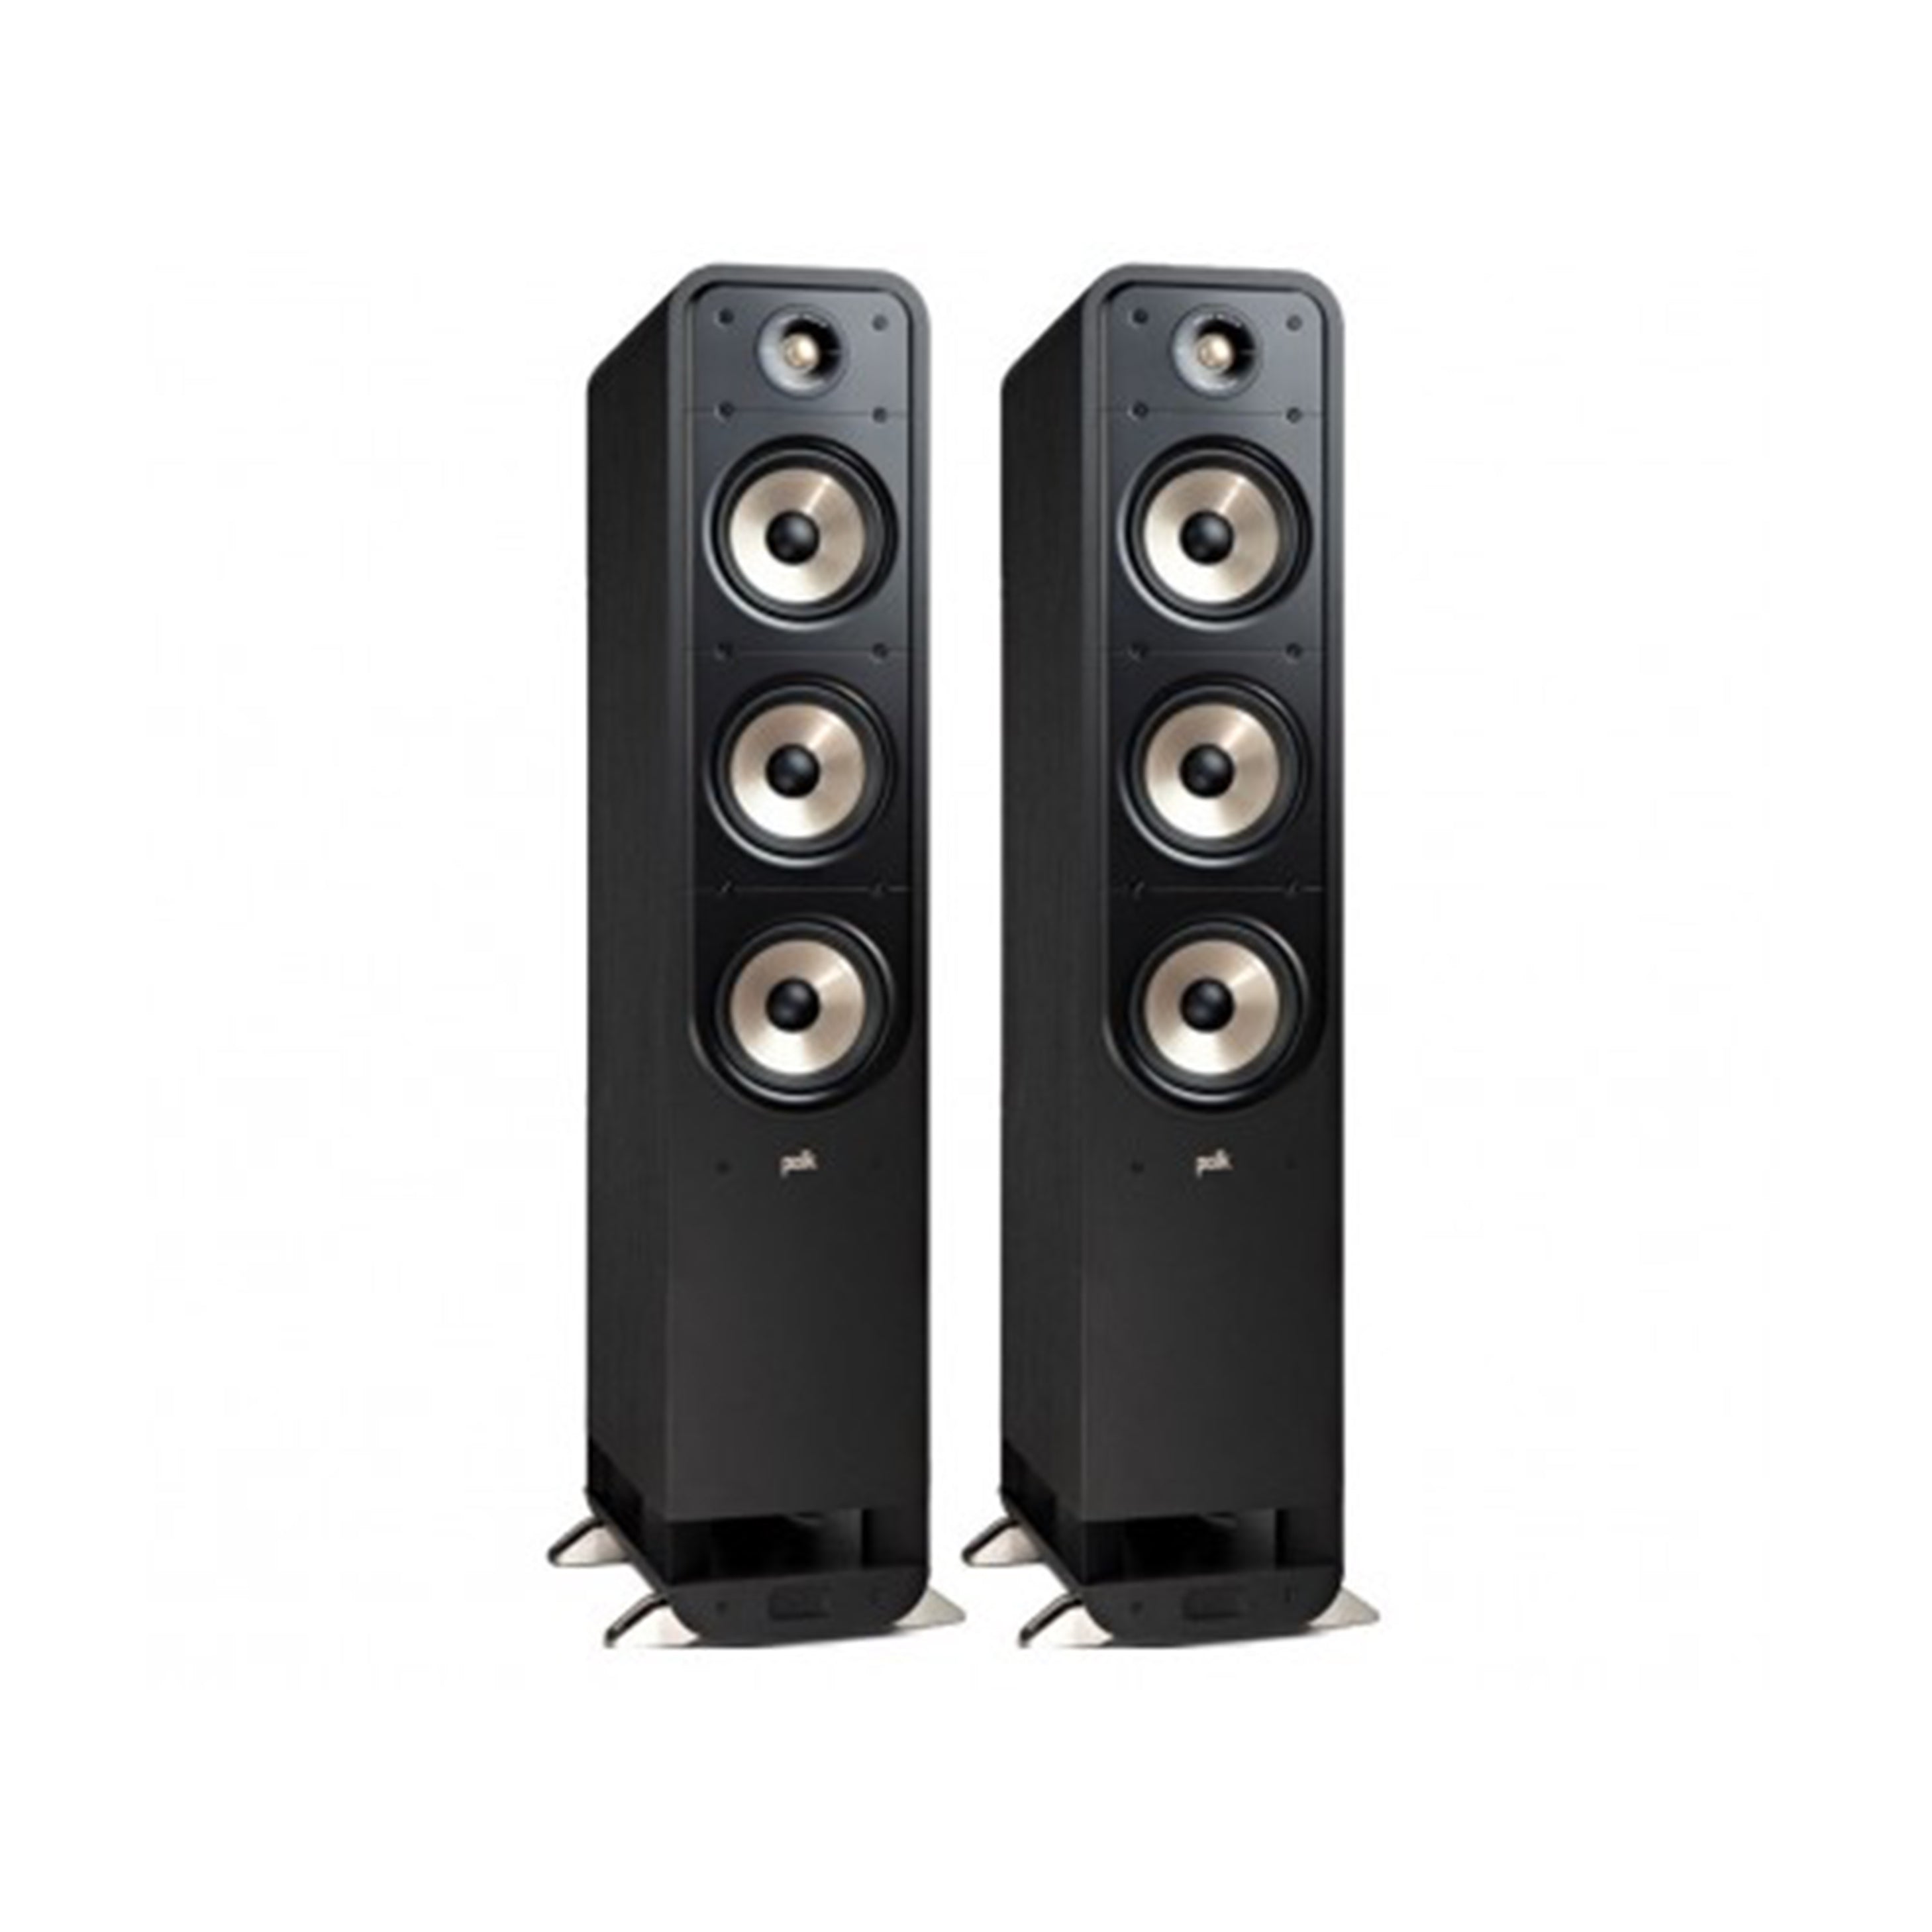 Buy Polk Audio Reserve R600 Floorstanding Speakers Online in India at  Lowest Price